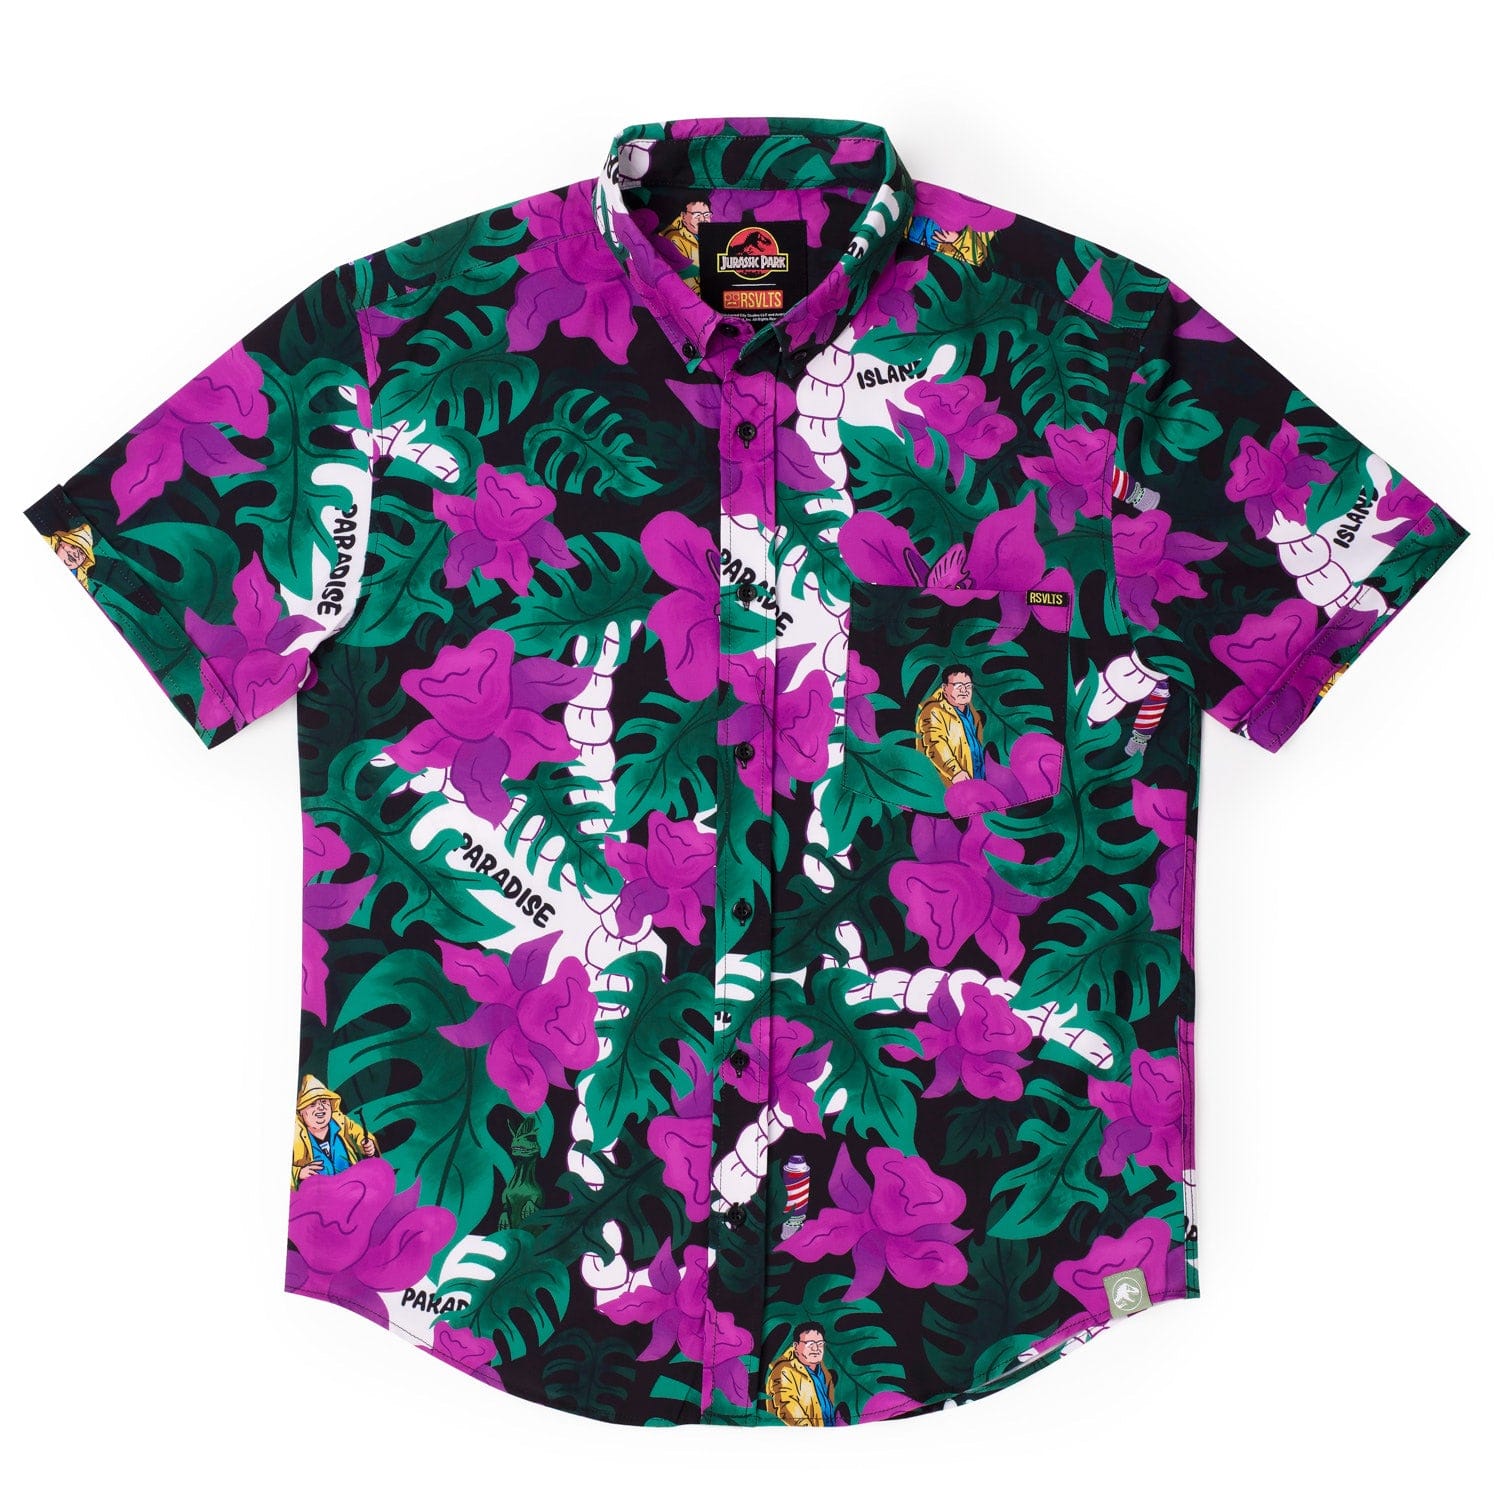 jurassic park nobody cares hawaiian shirt 8513 zdO43